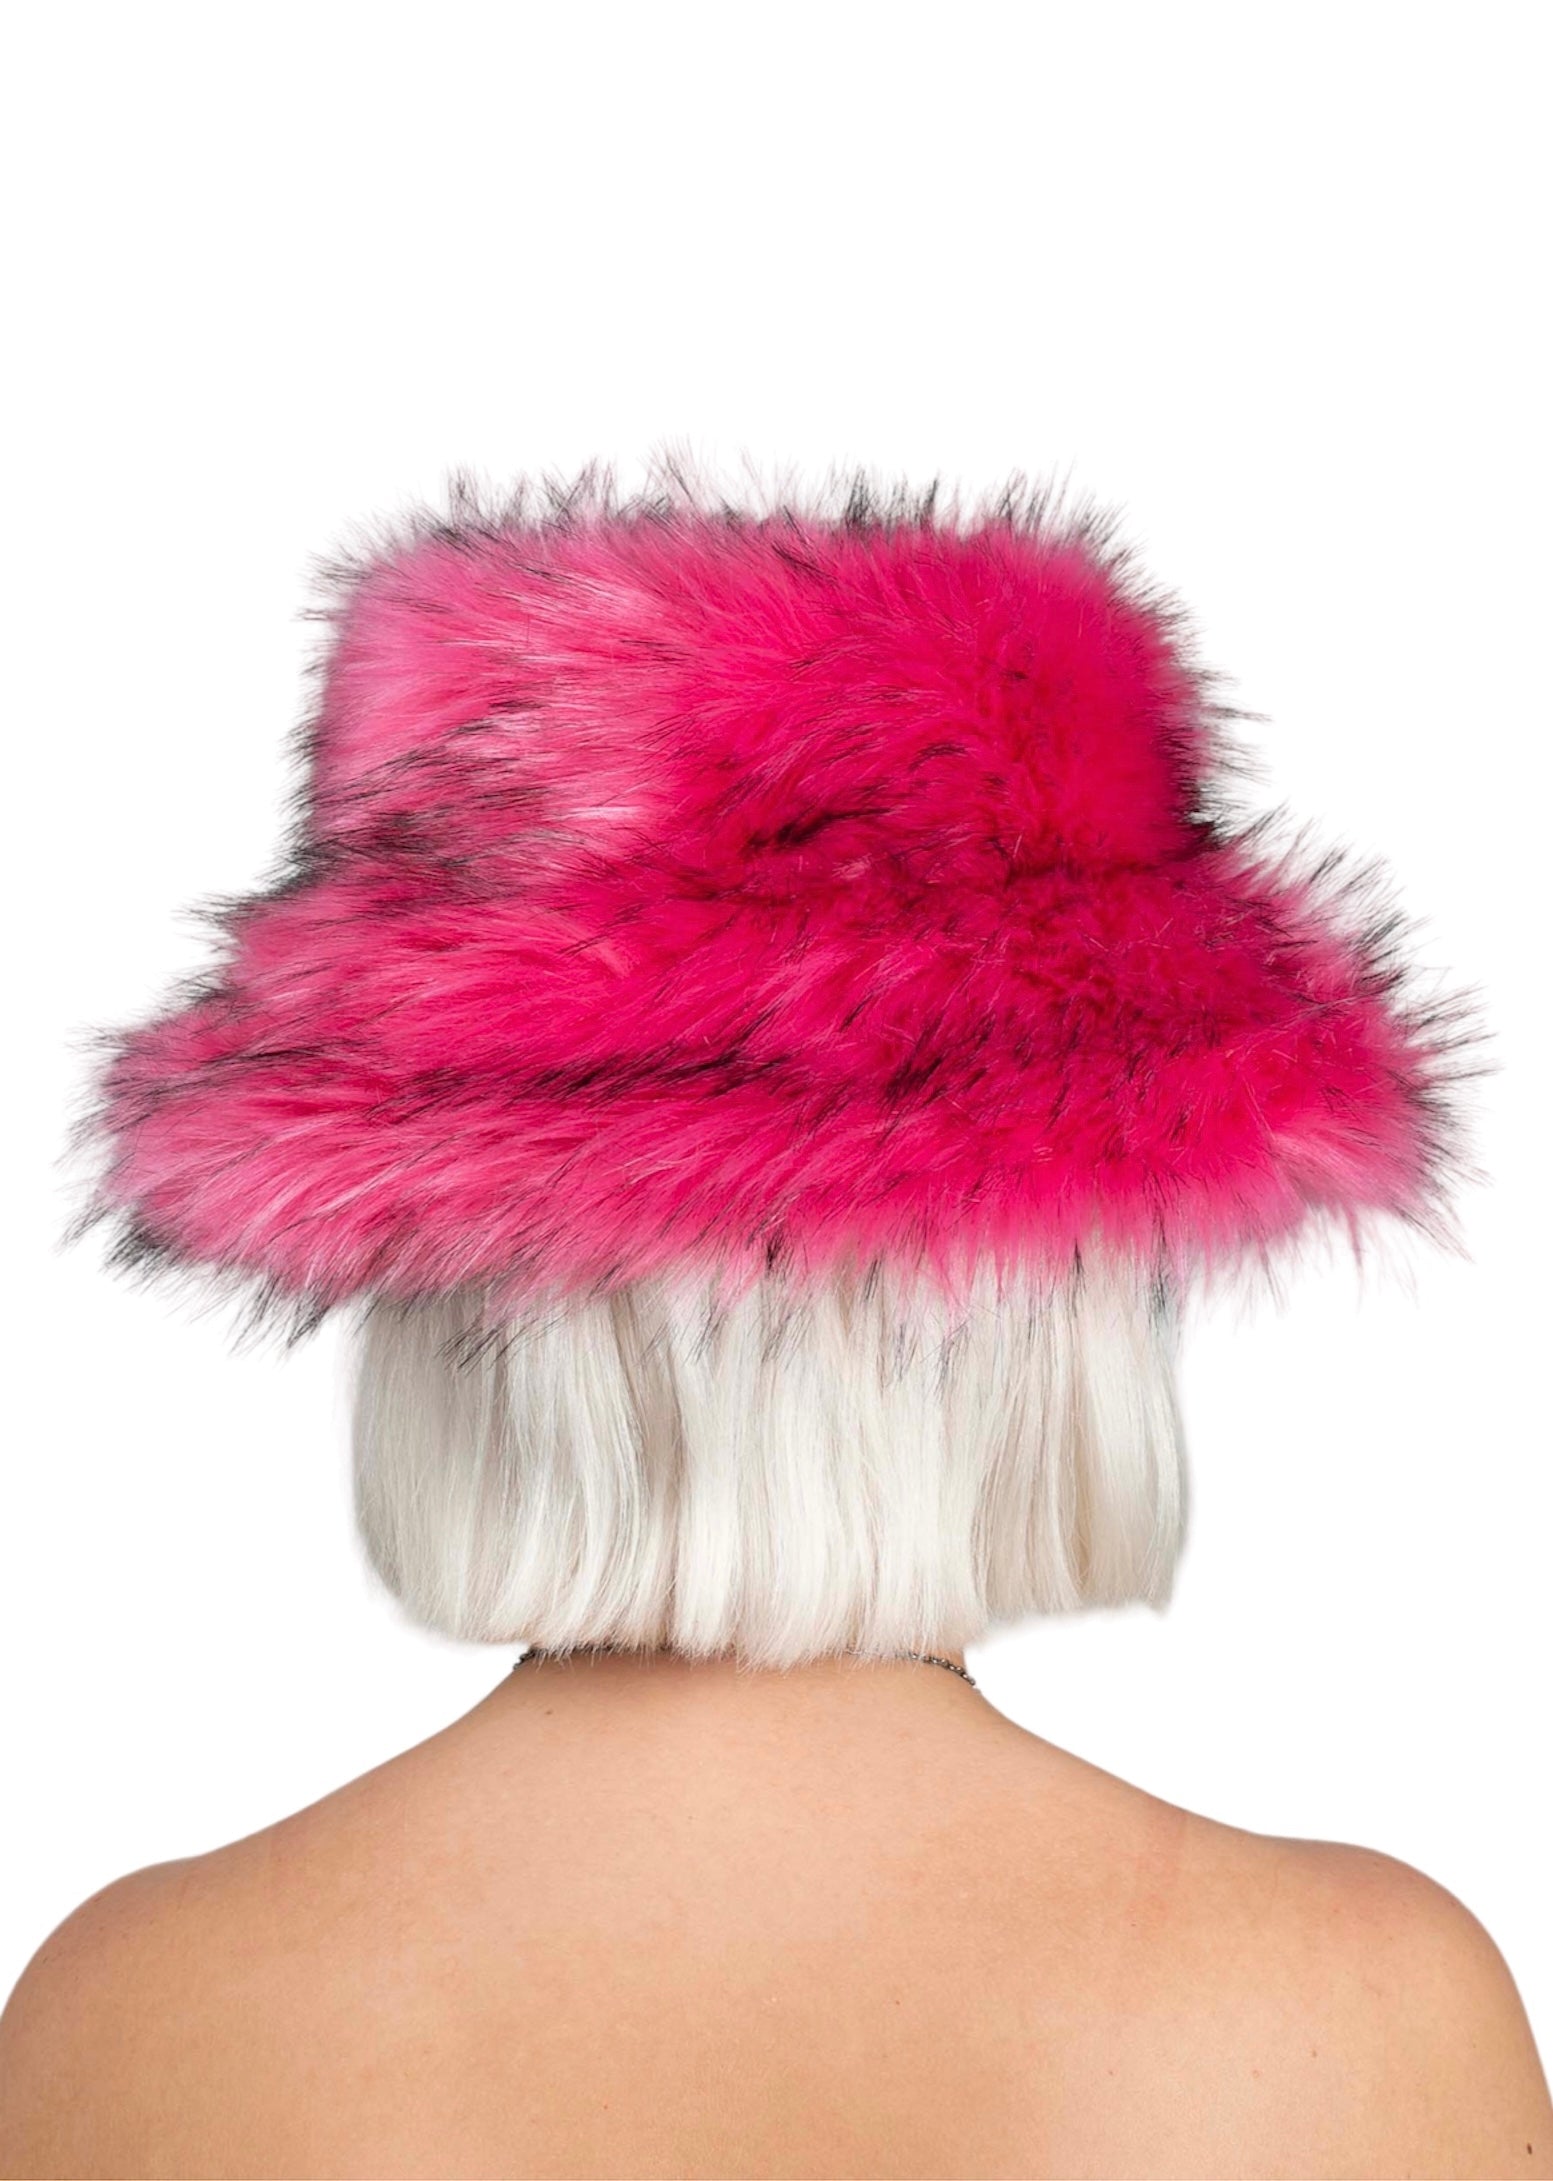 【希少】 rashhiiid faux fur pink hat ファー帽子ピンク